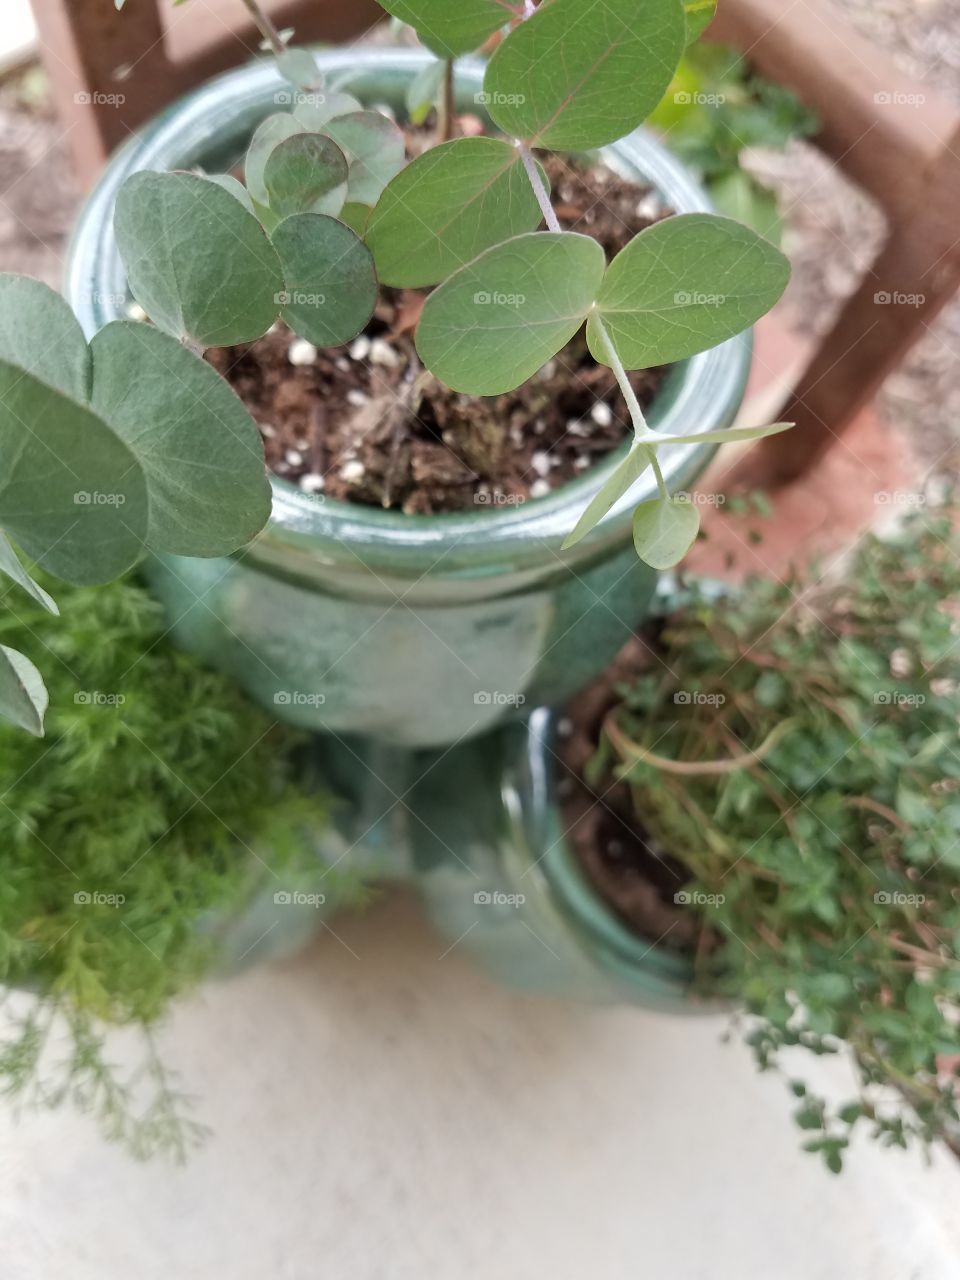 Leaf, Flora, Growth, Soil, Pot